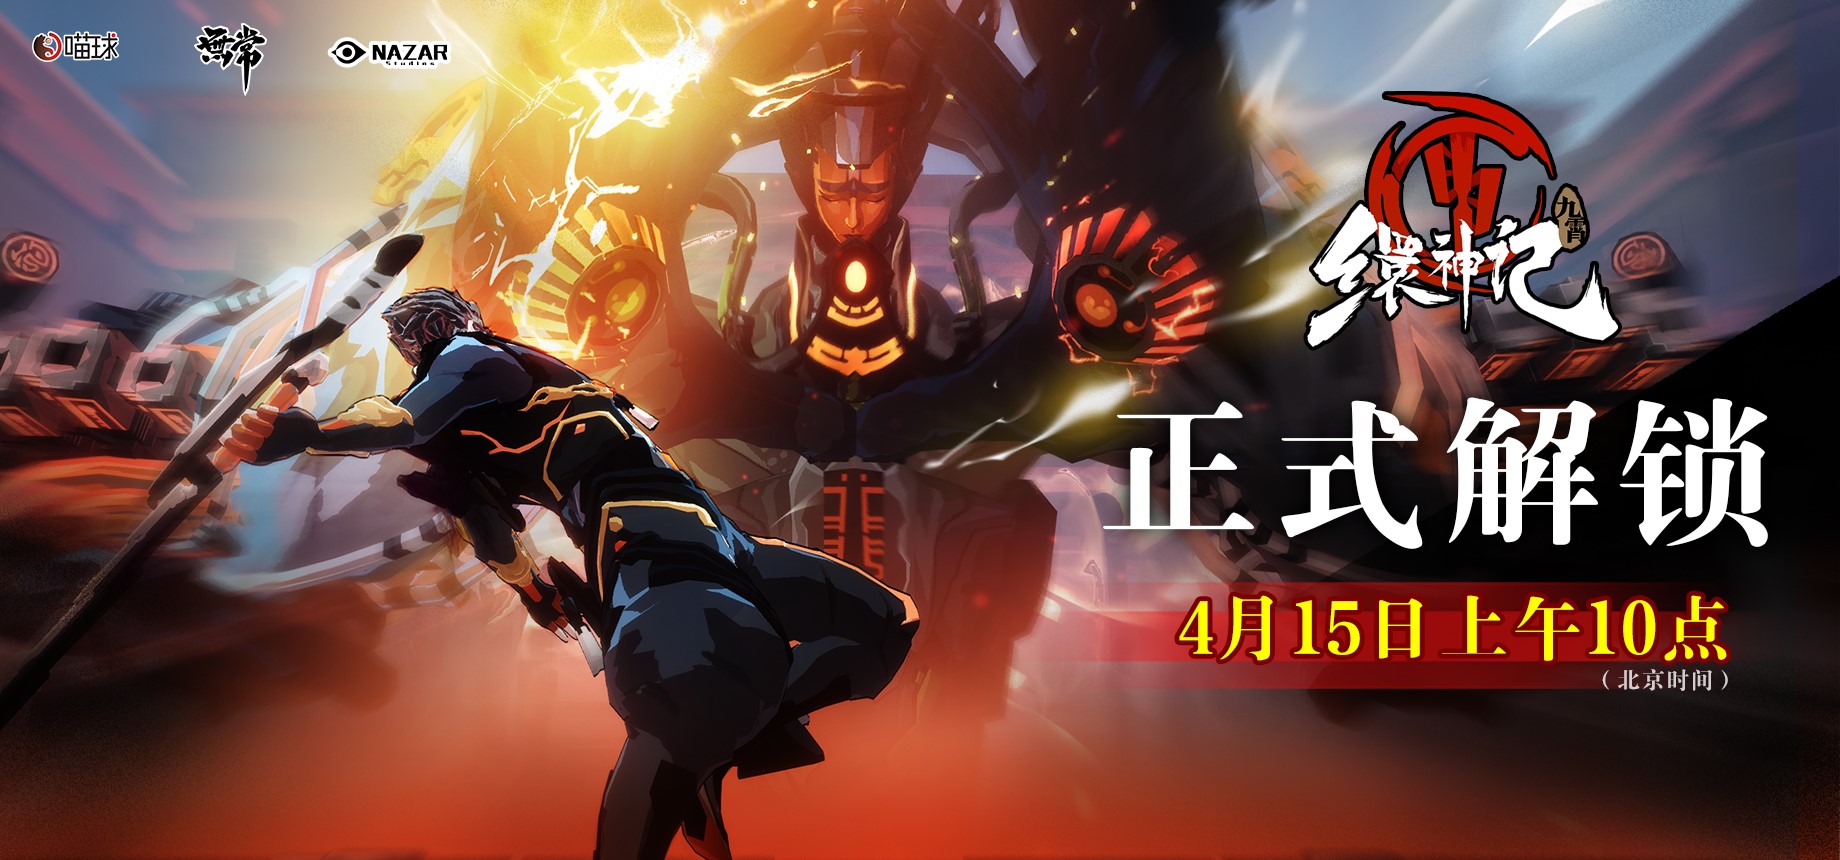 暗黑仙俠動作遊戲《九霄繯神記》4月15日正式發售